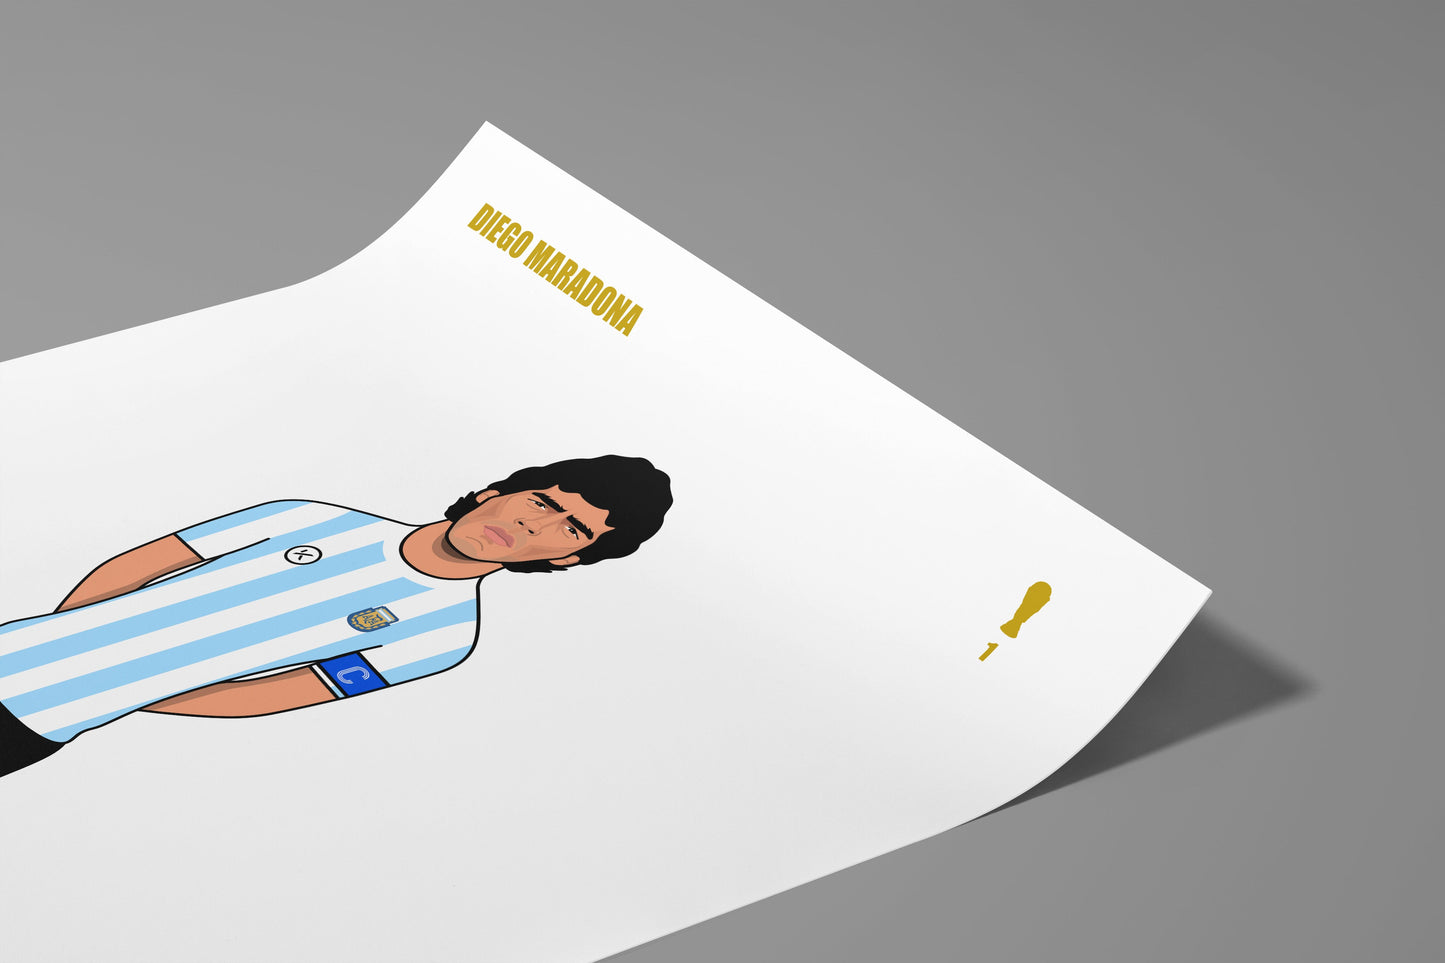 G.O.A.T. - Diego Maradona